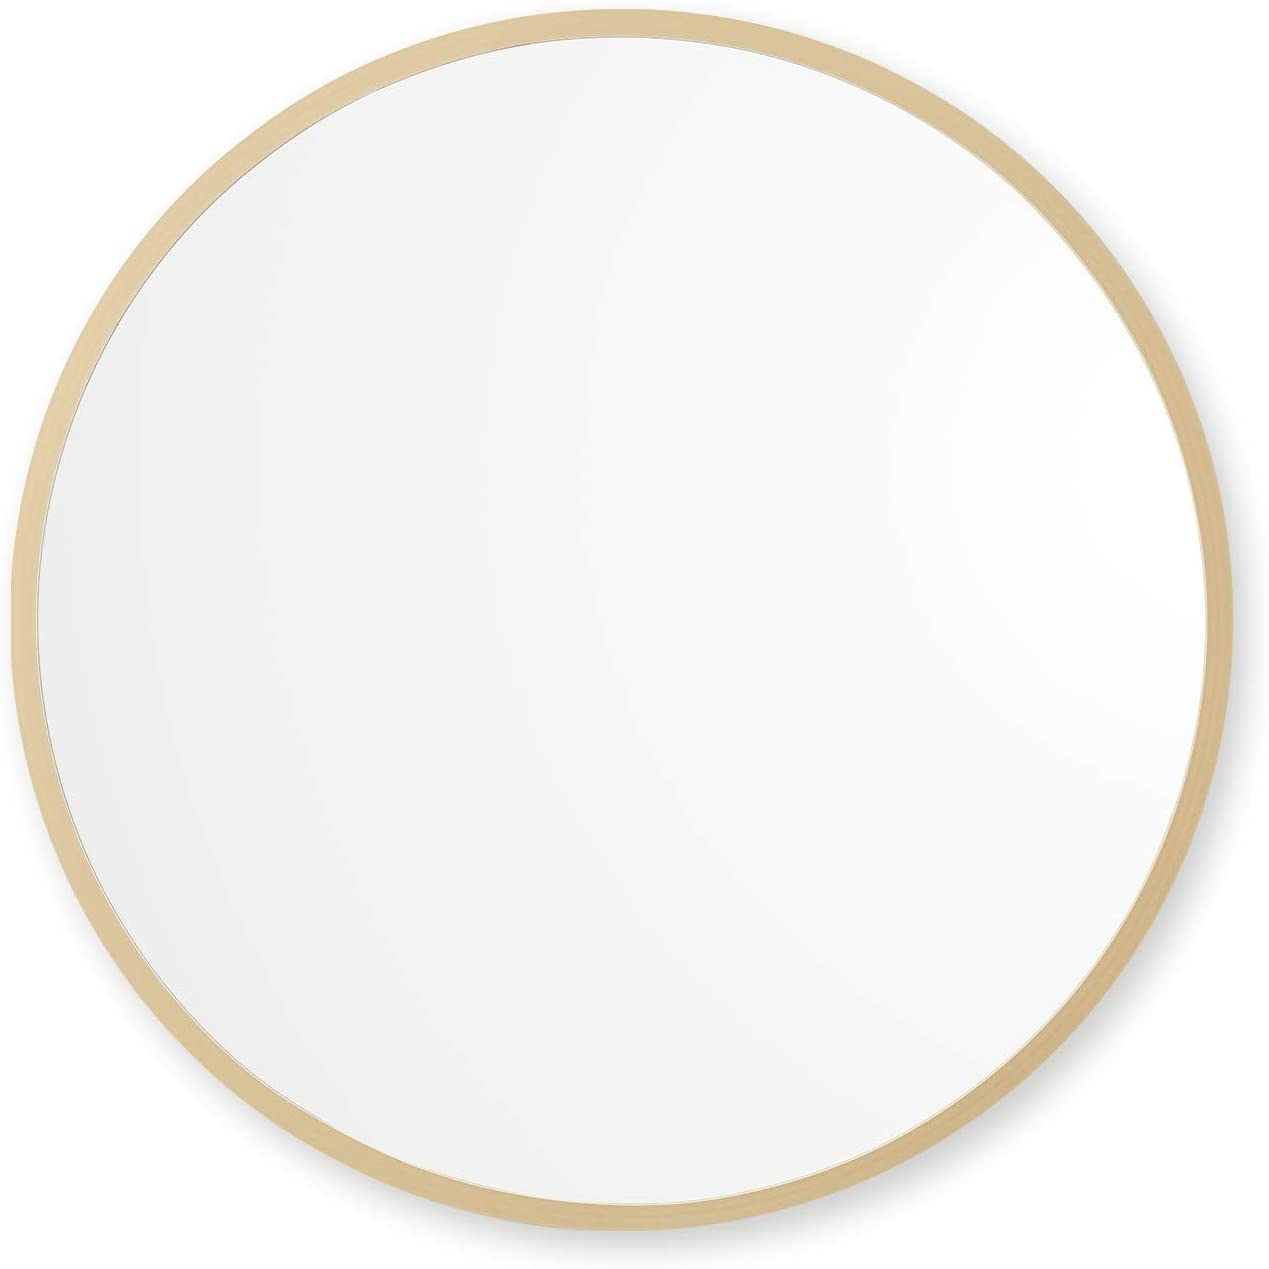 Better Bevel Mattee Gold Wall Mirror, 24×24-Inch